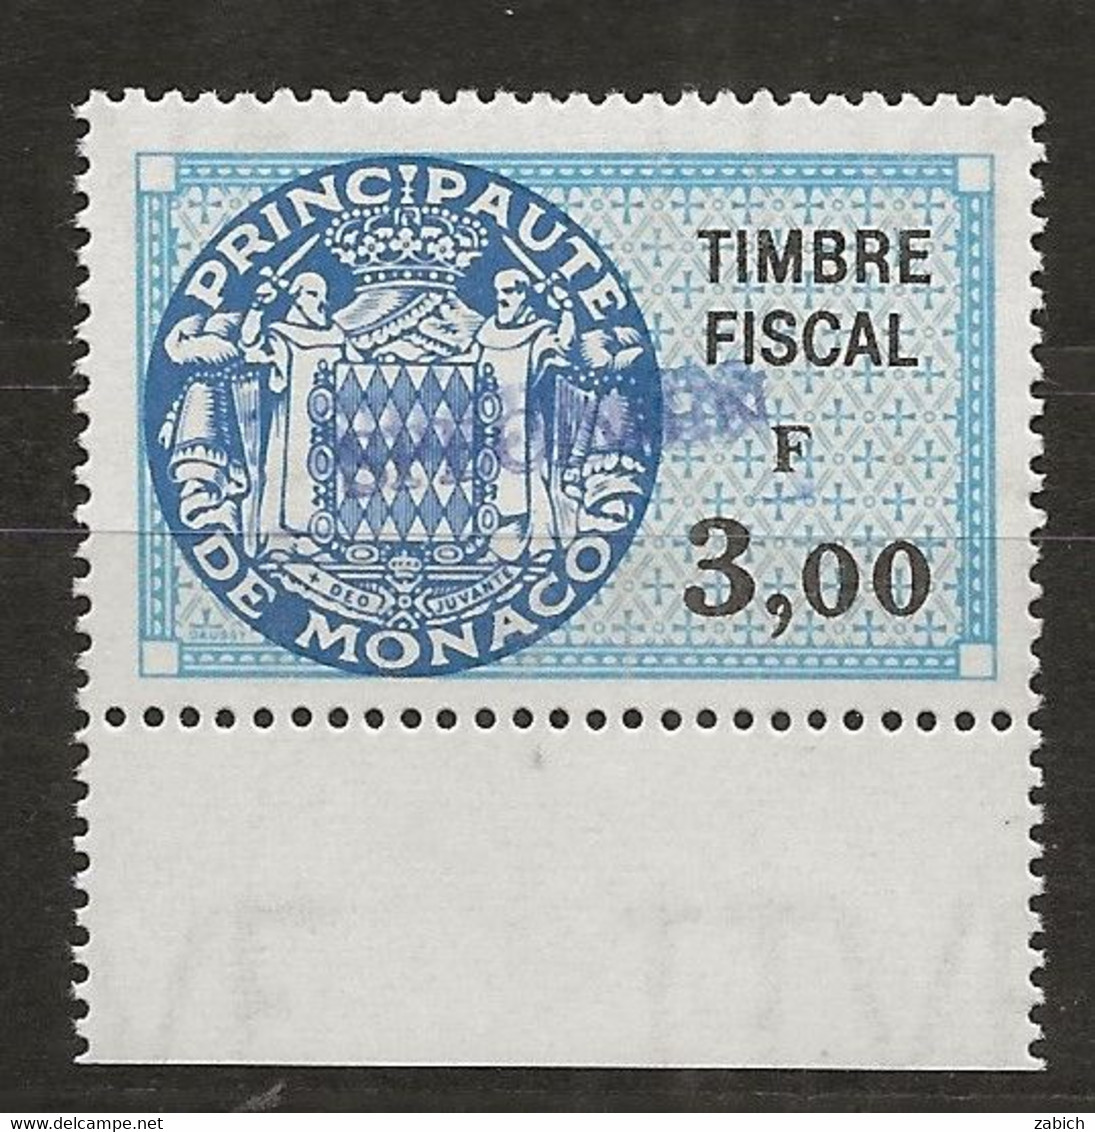 TIMBRES FISCAUX DE MONACO SERIE UNIFIEE N° 91 3 F Bleu Rare Surchargé Spécimen Neuf Gomme Mnh (**) - Fiscales